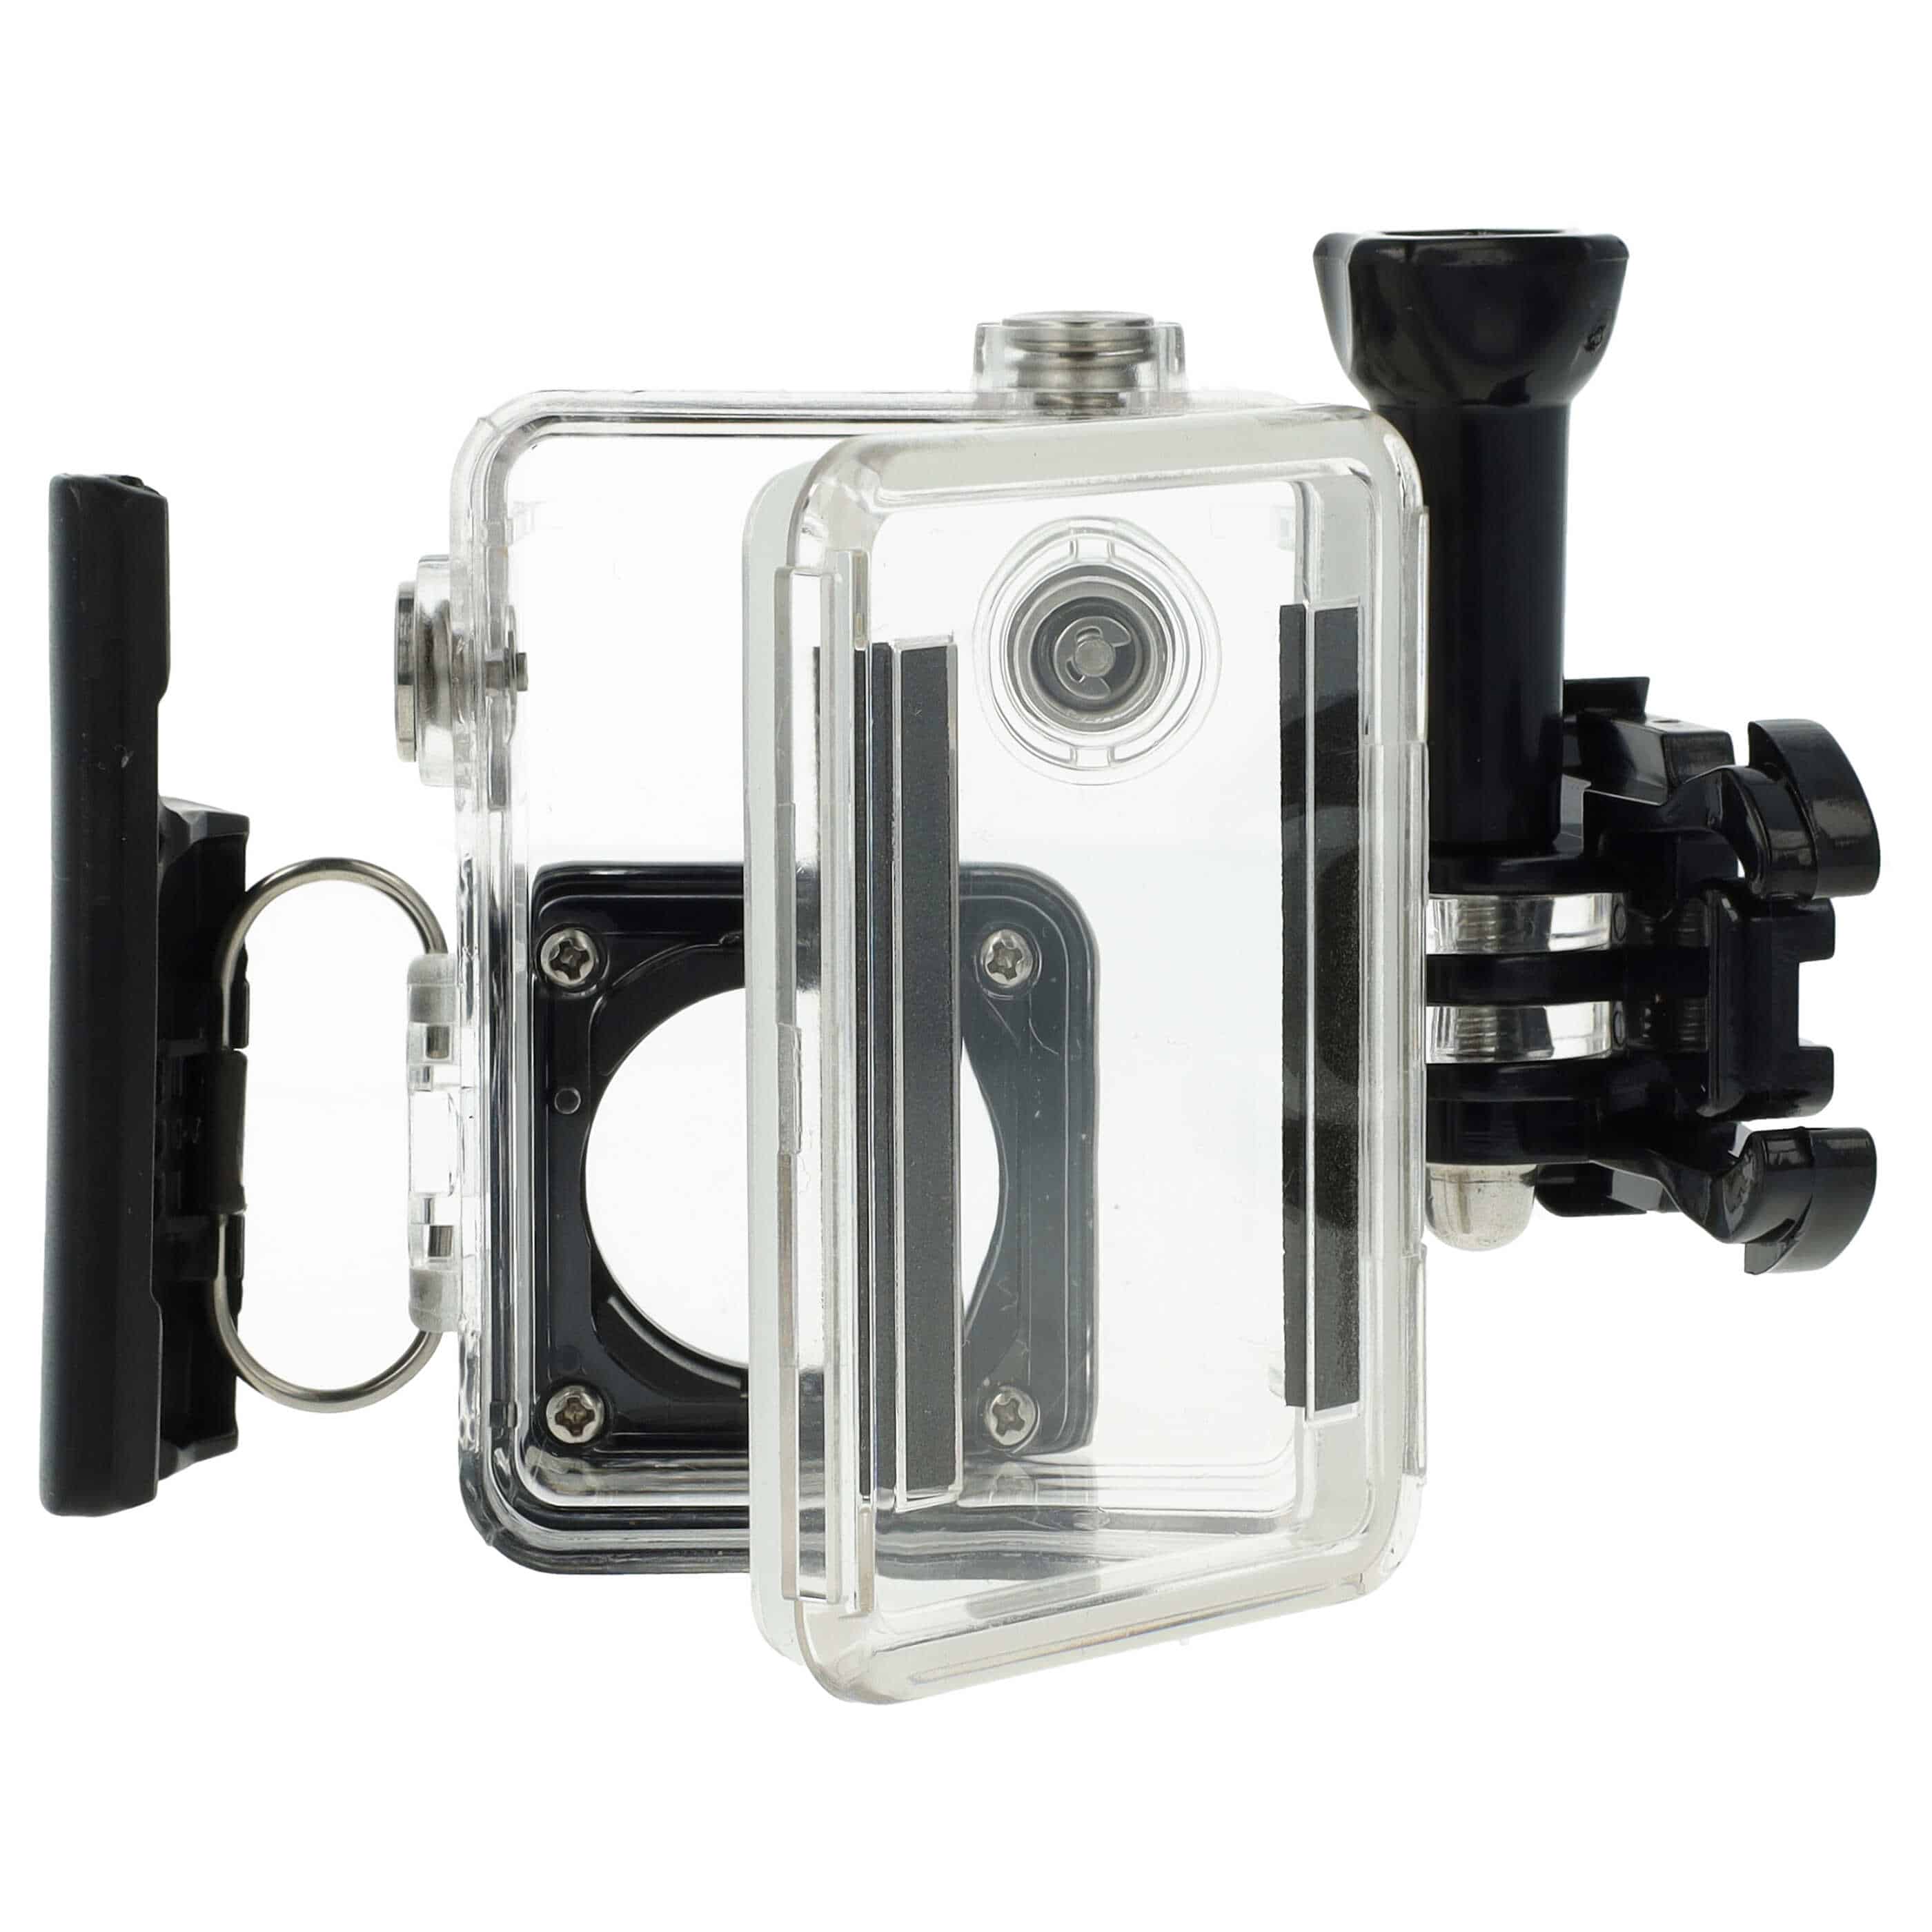 Obudowa wodoszczelna do kamery sportowej GoPro Hero 3, 3+, 4 - maks. głębokość 45 m